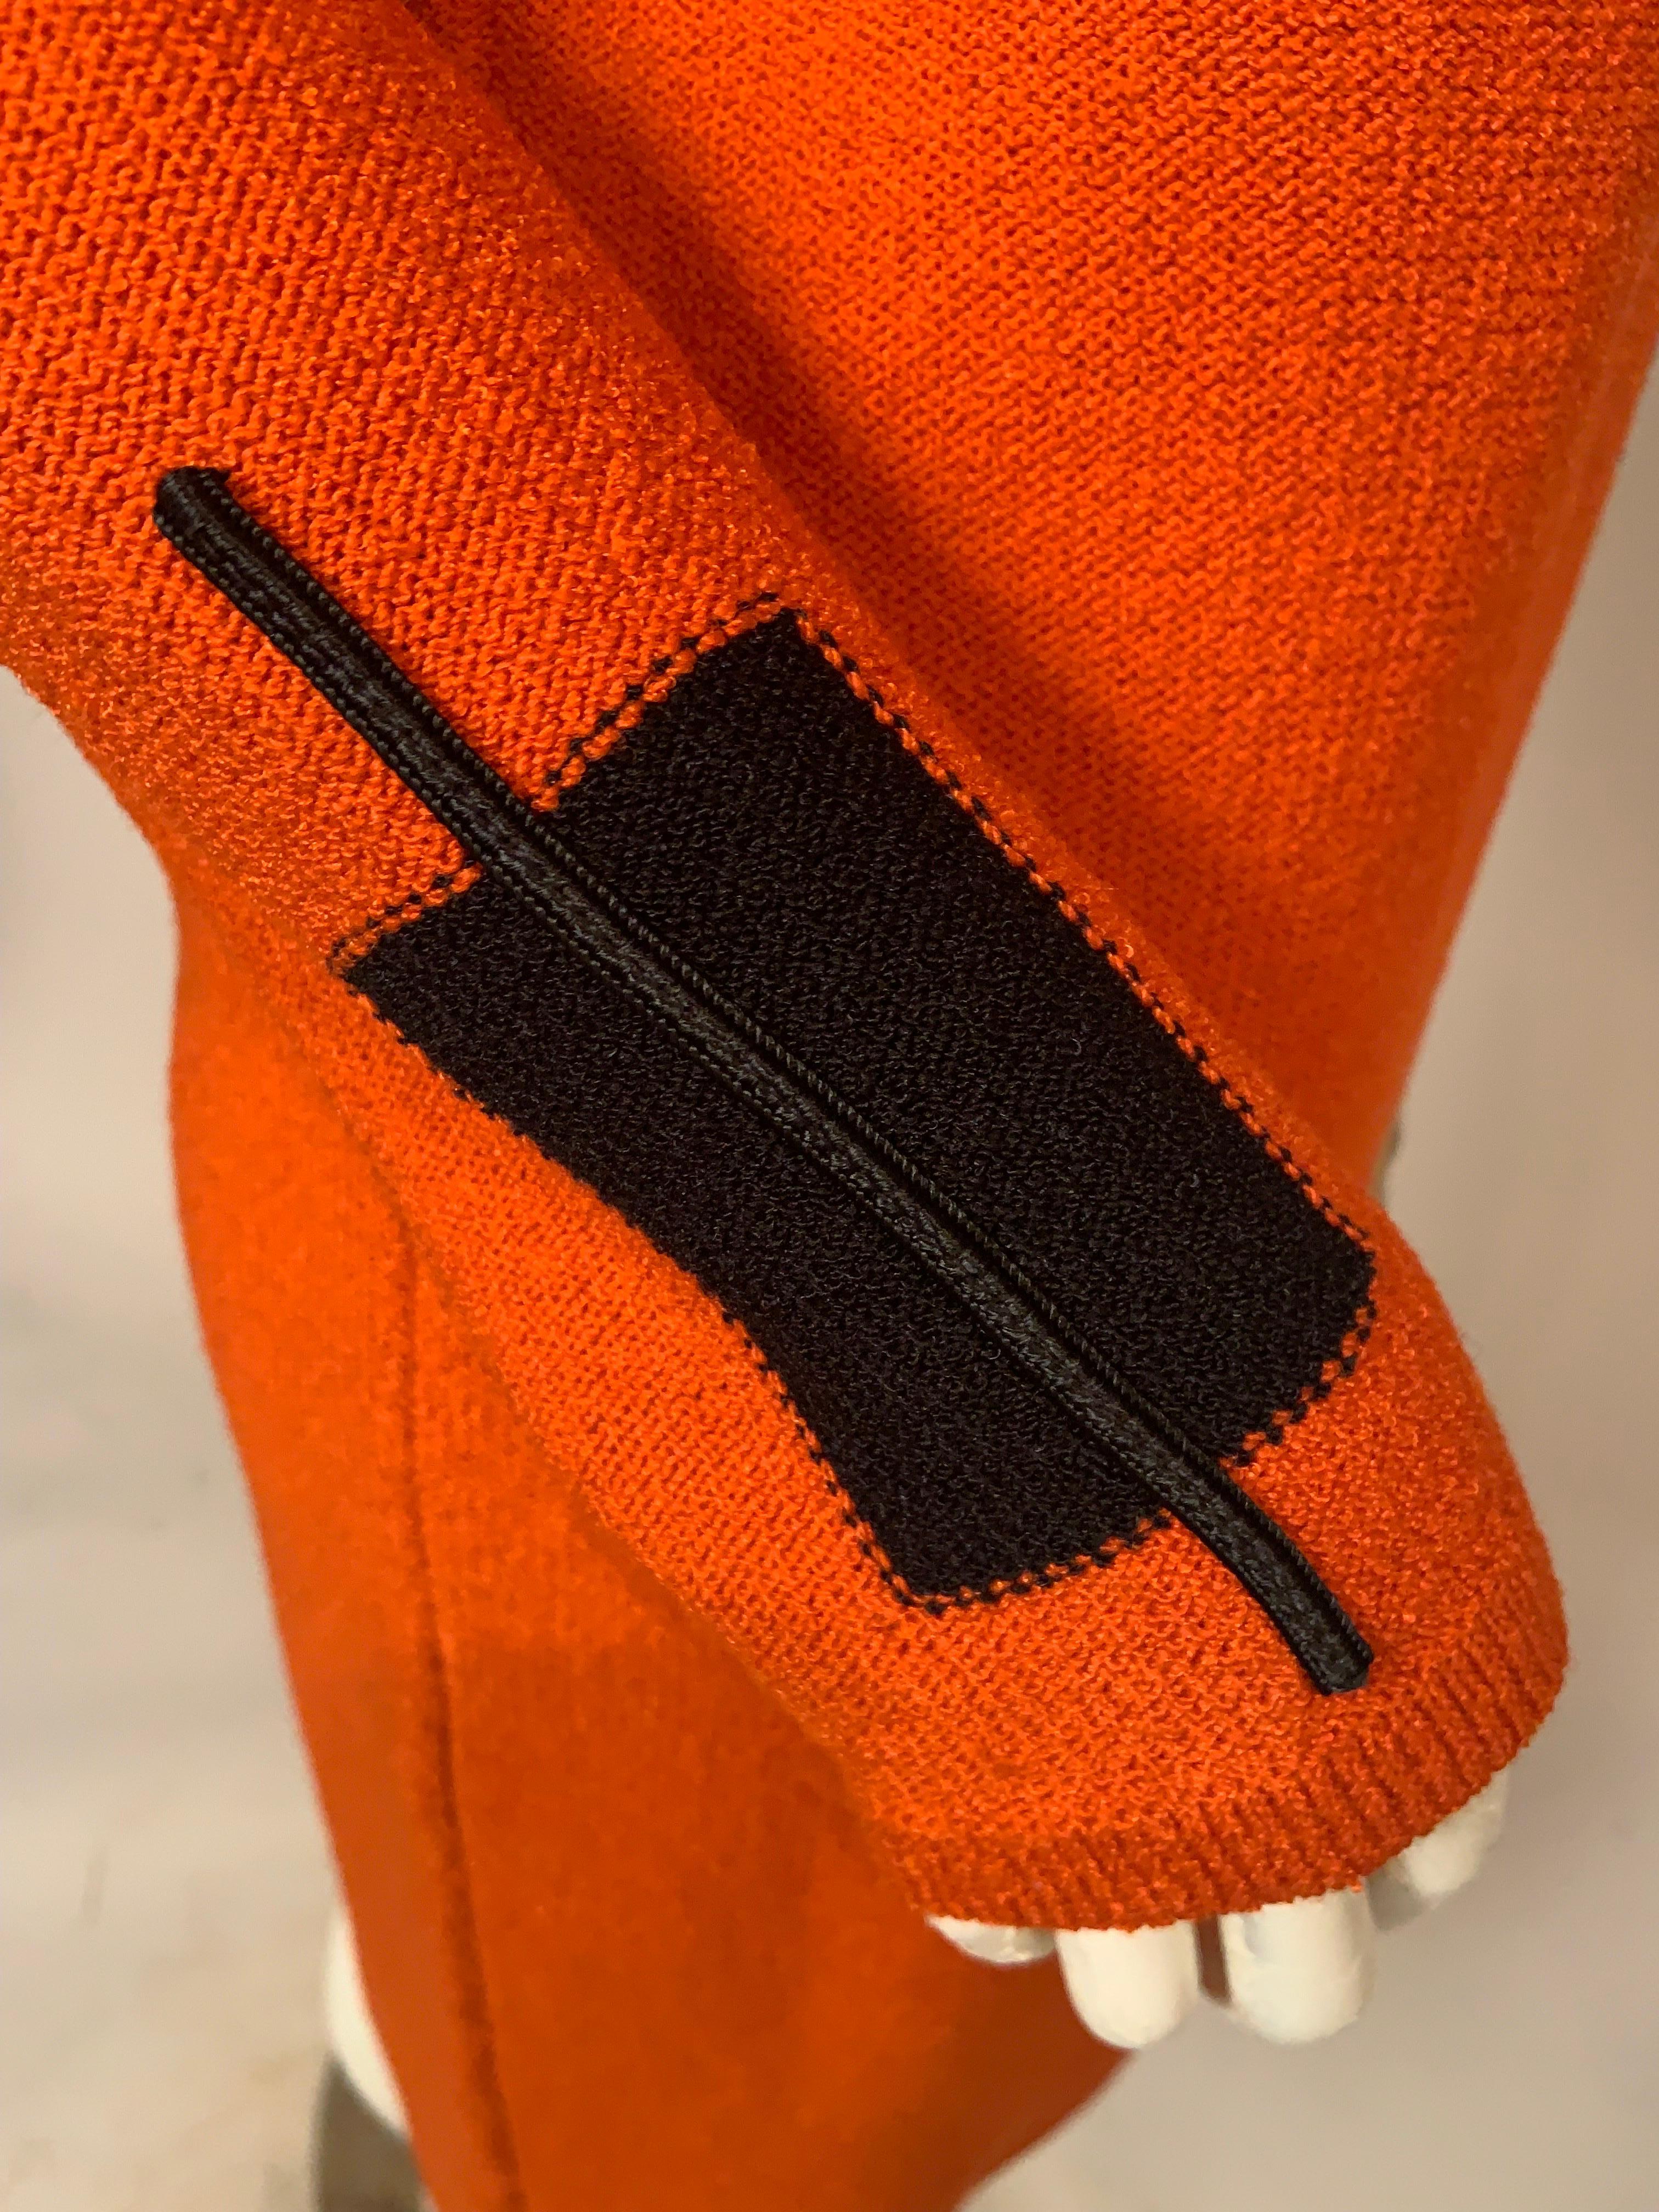 Steve Fabrikant Modernist Inspired Orange Knit Dress 2